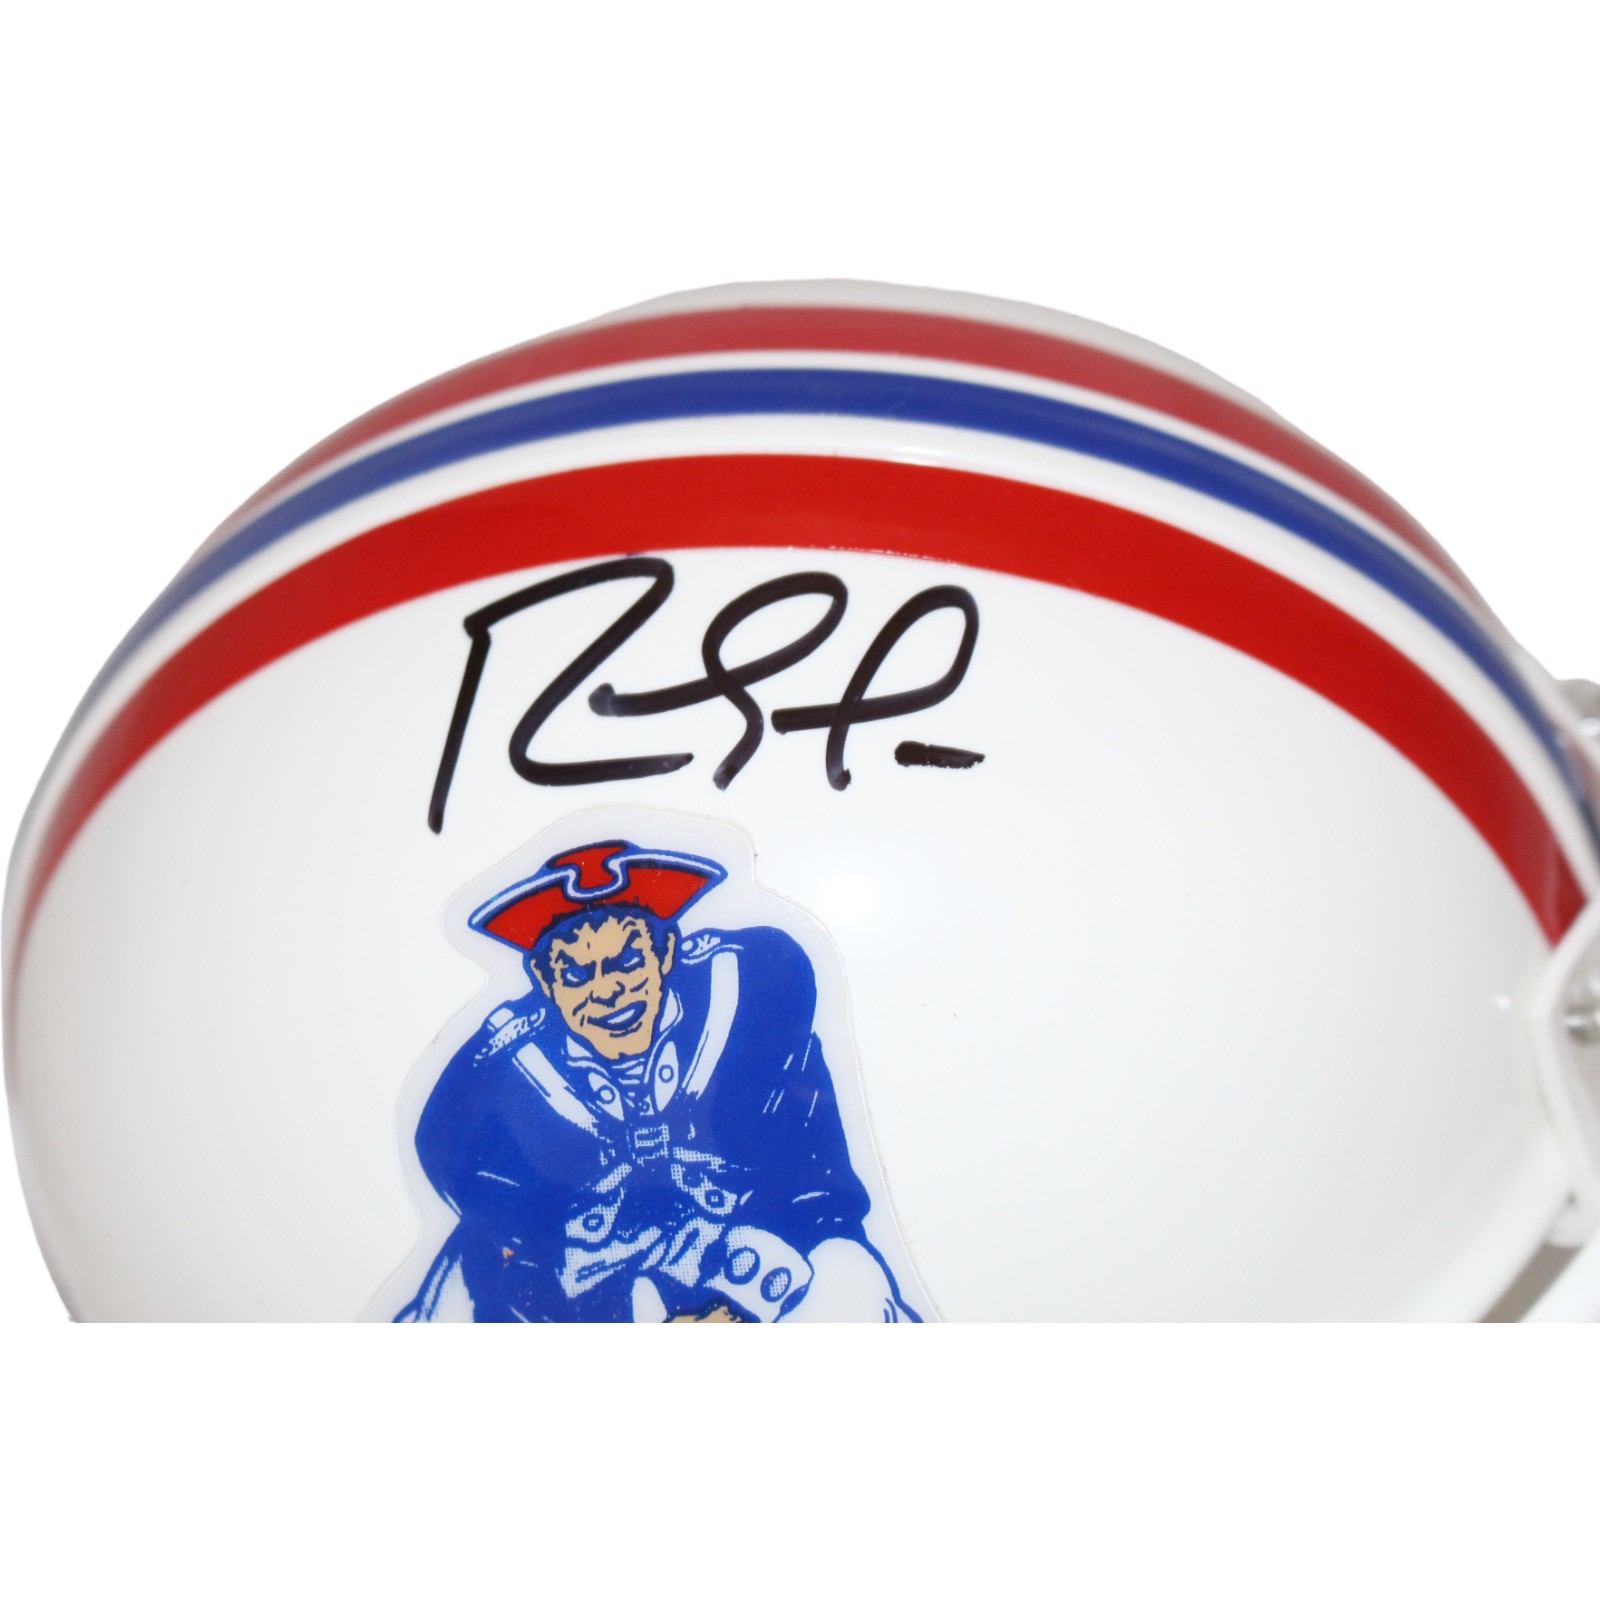 Randy Moss Signed New England Patriots Mini Helmet VSR4 TB Beckett